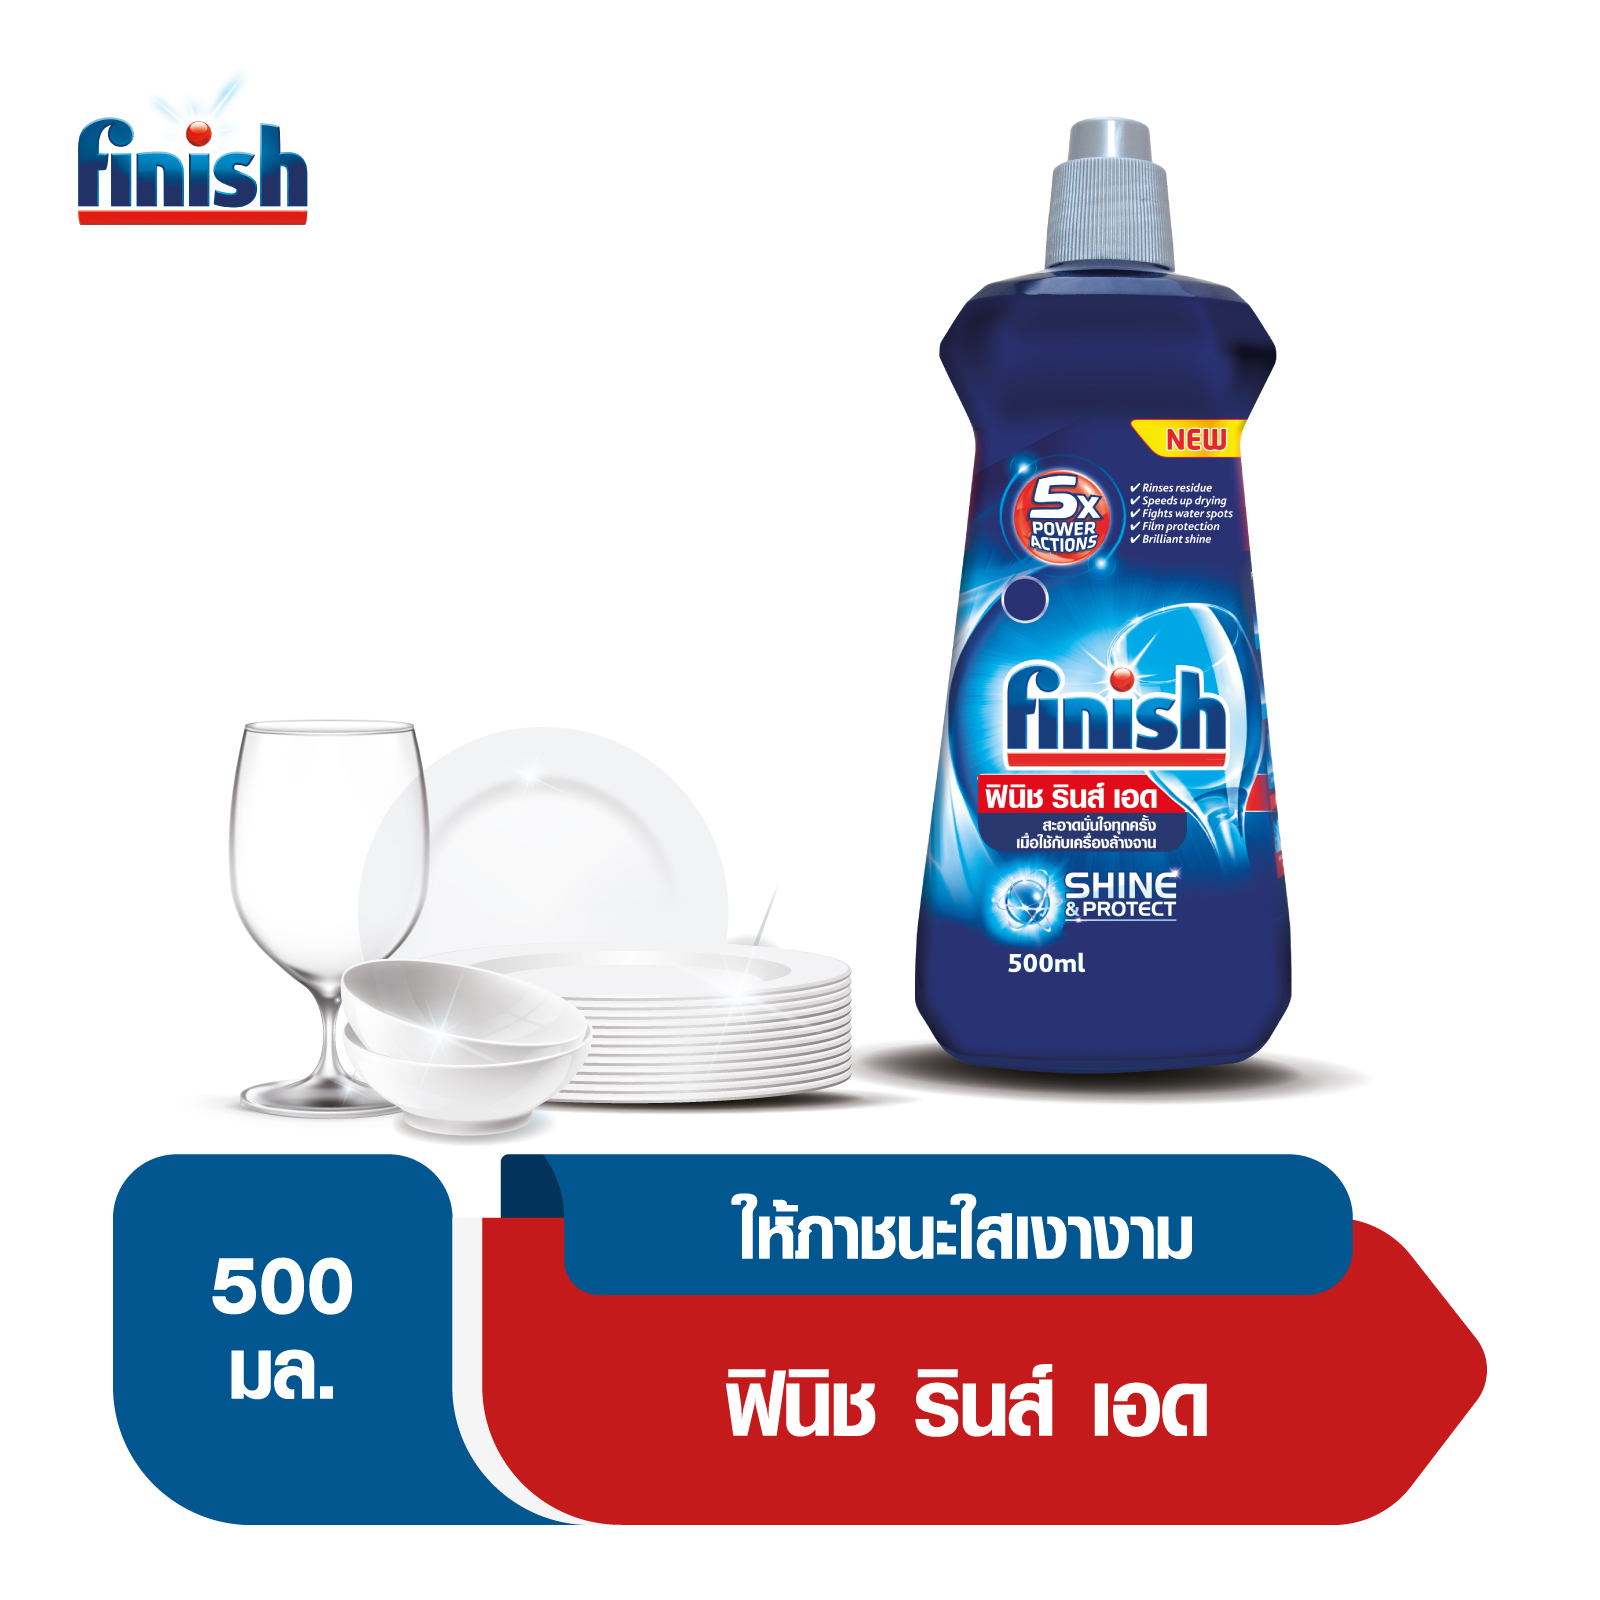 Finish ฟินิช ผลิตภัณฑ์ล้างจานเพิ่มประสิทธิภาพในการล้างจาน รินซ์ เอด สำหรับเครื่องล้างจานอัตโนมัติ 500 มล.